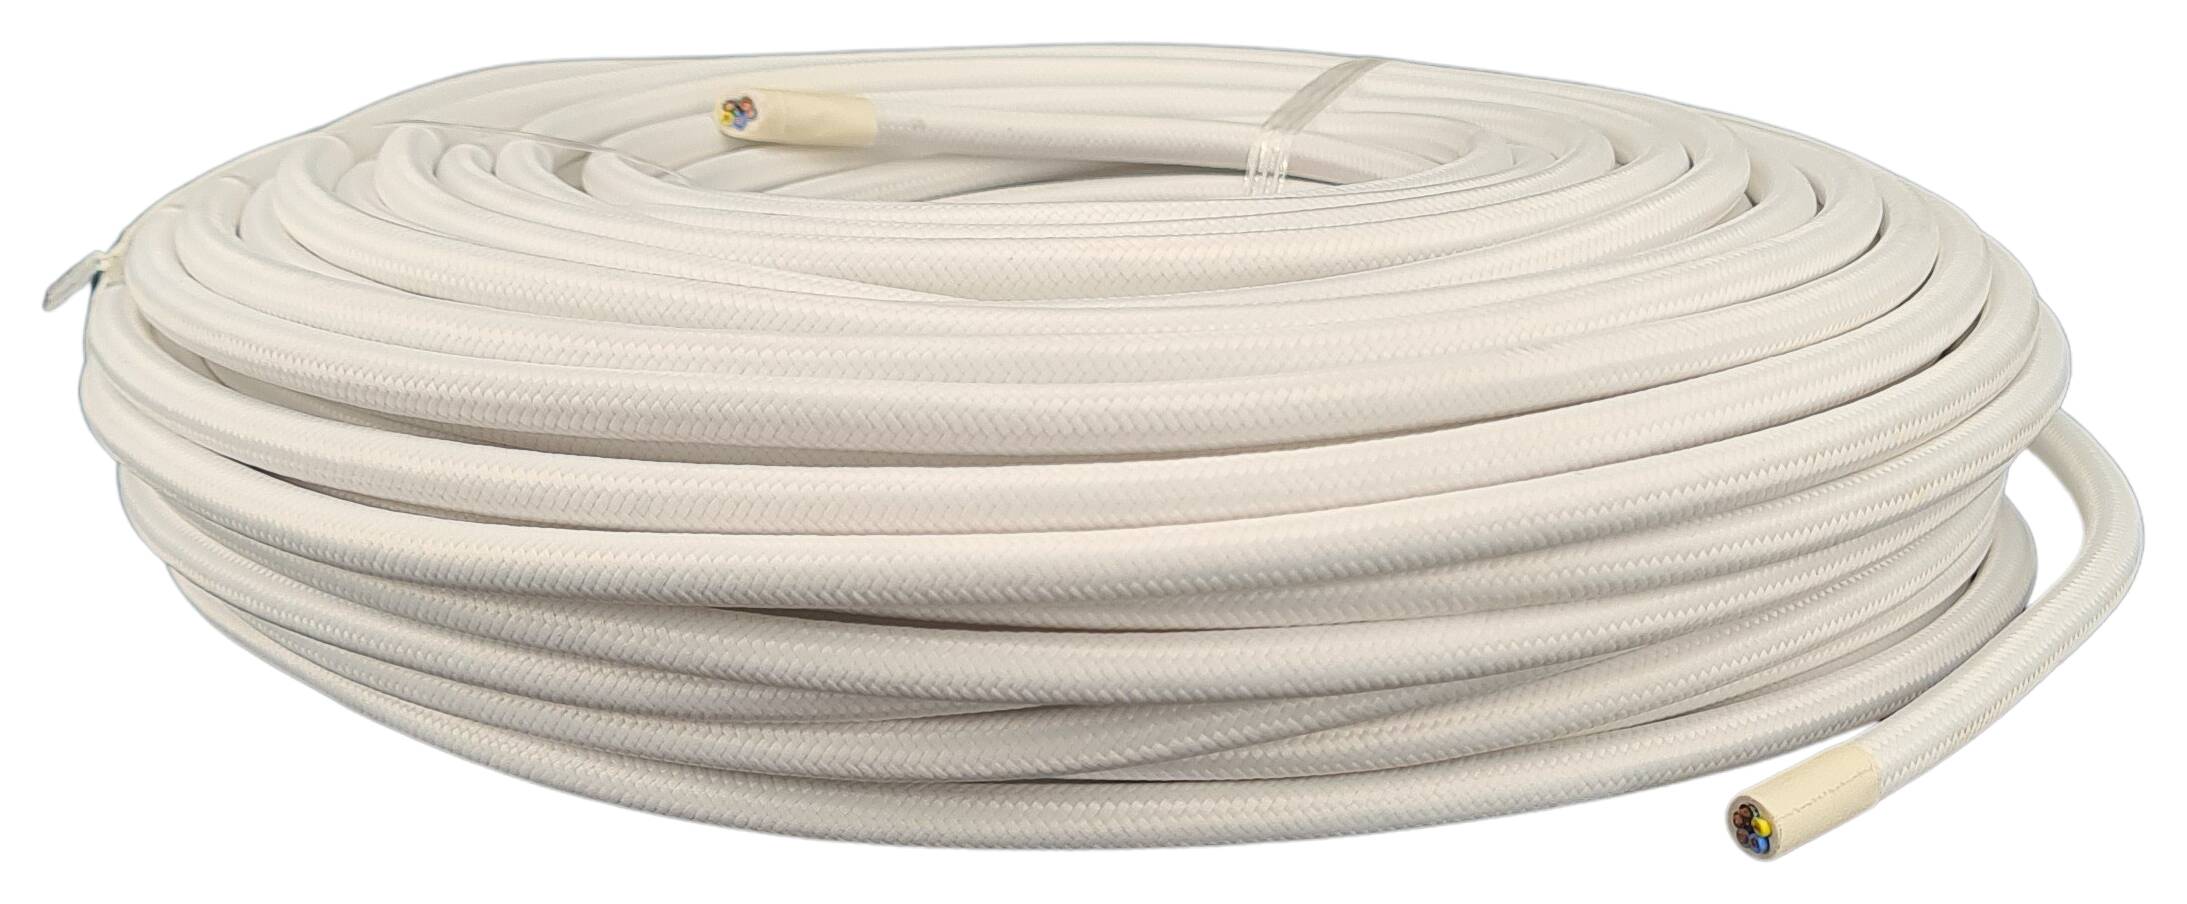 Kabel m. Stahlseil 5G 0,75 HO5VV-F PVC  textilummantelt RAL 9016 weiss